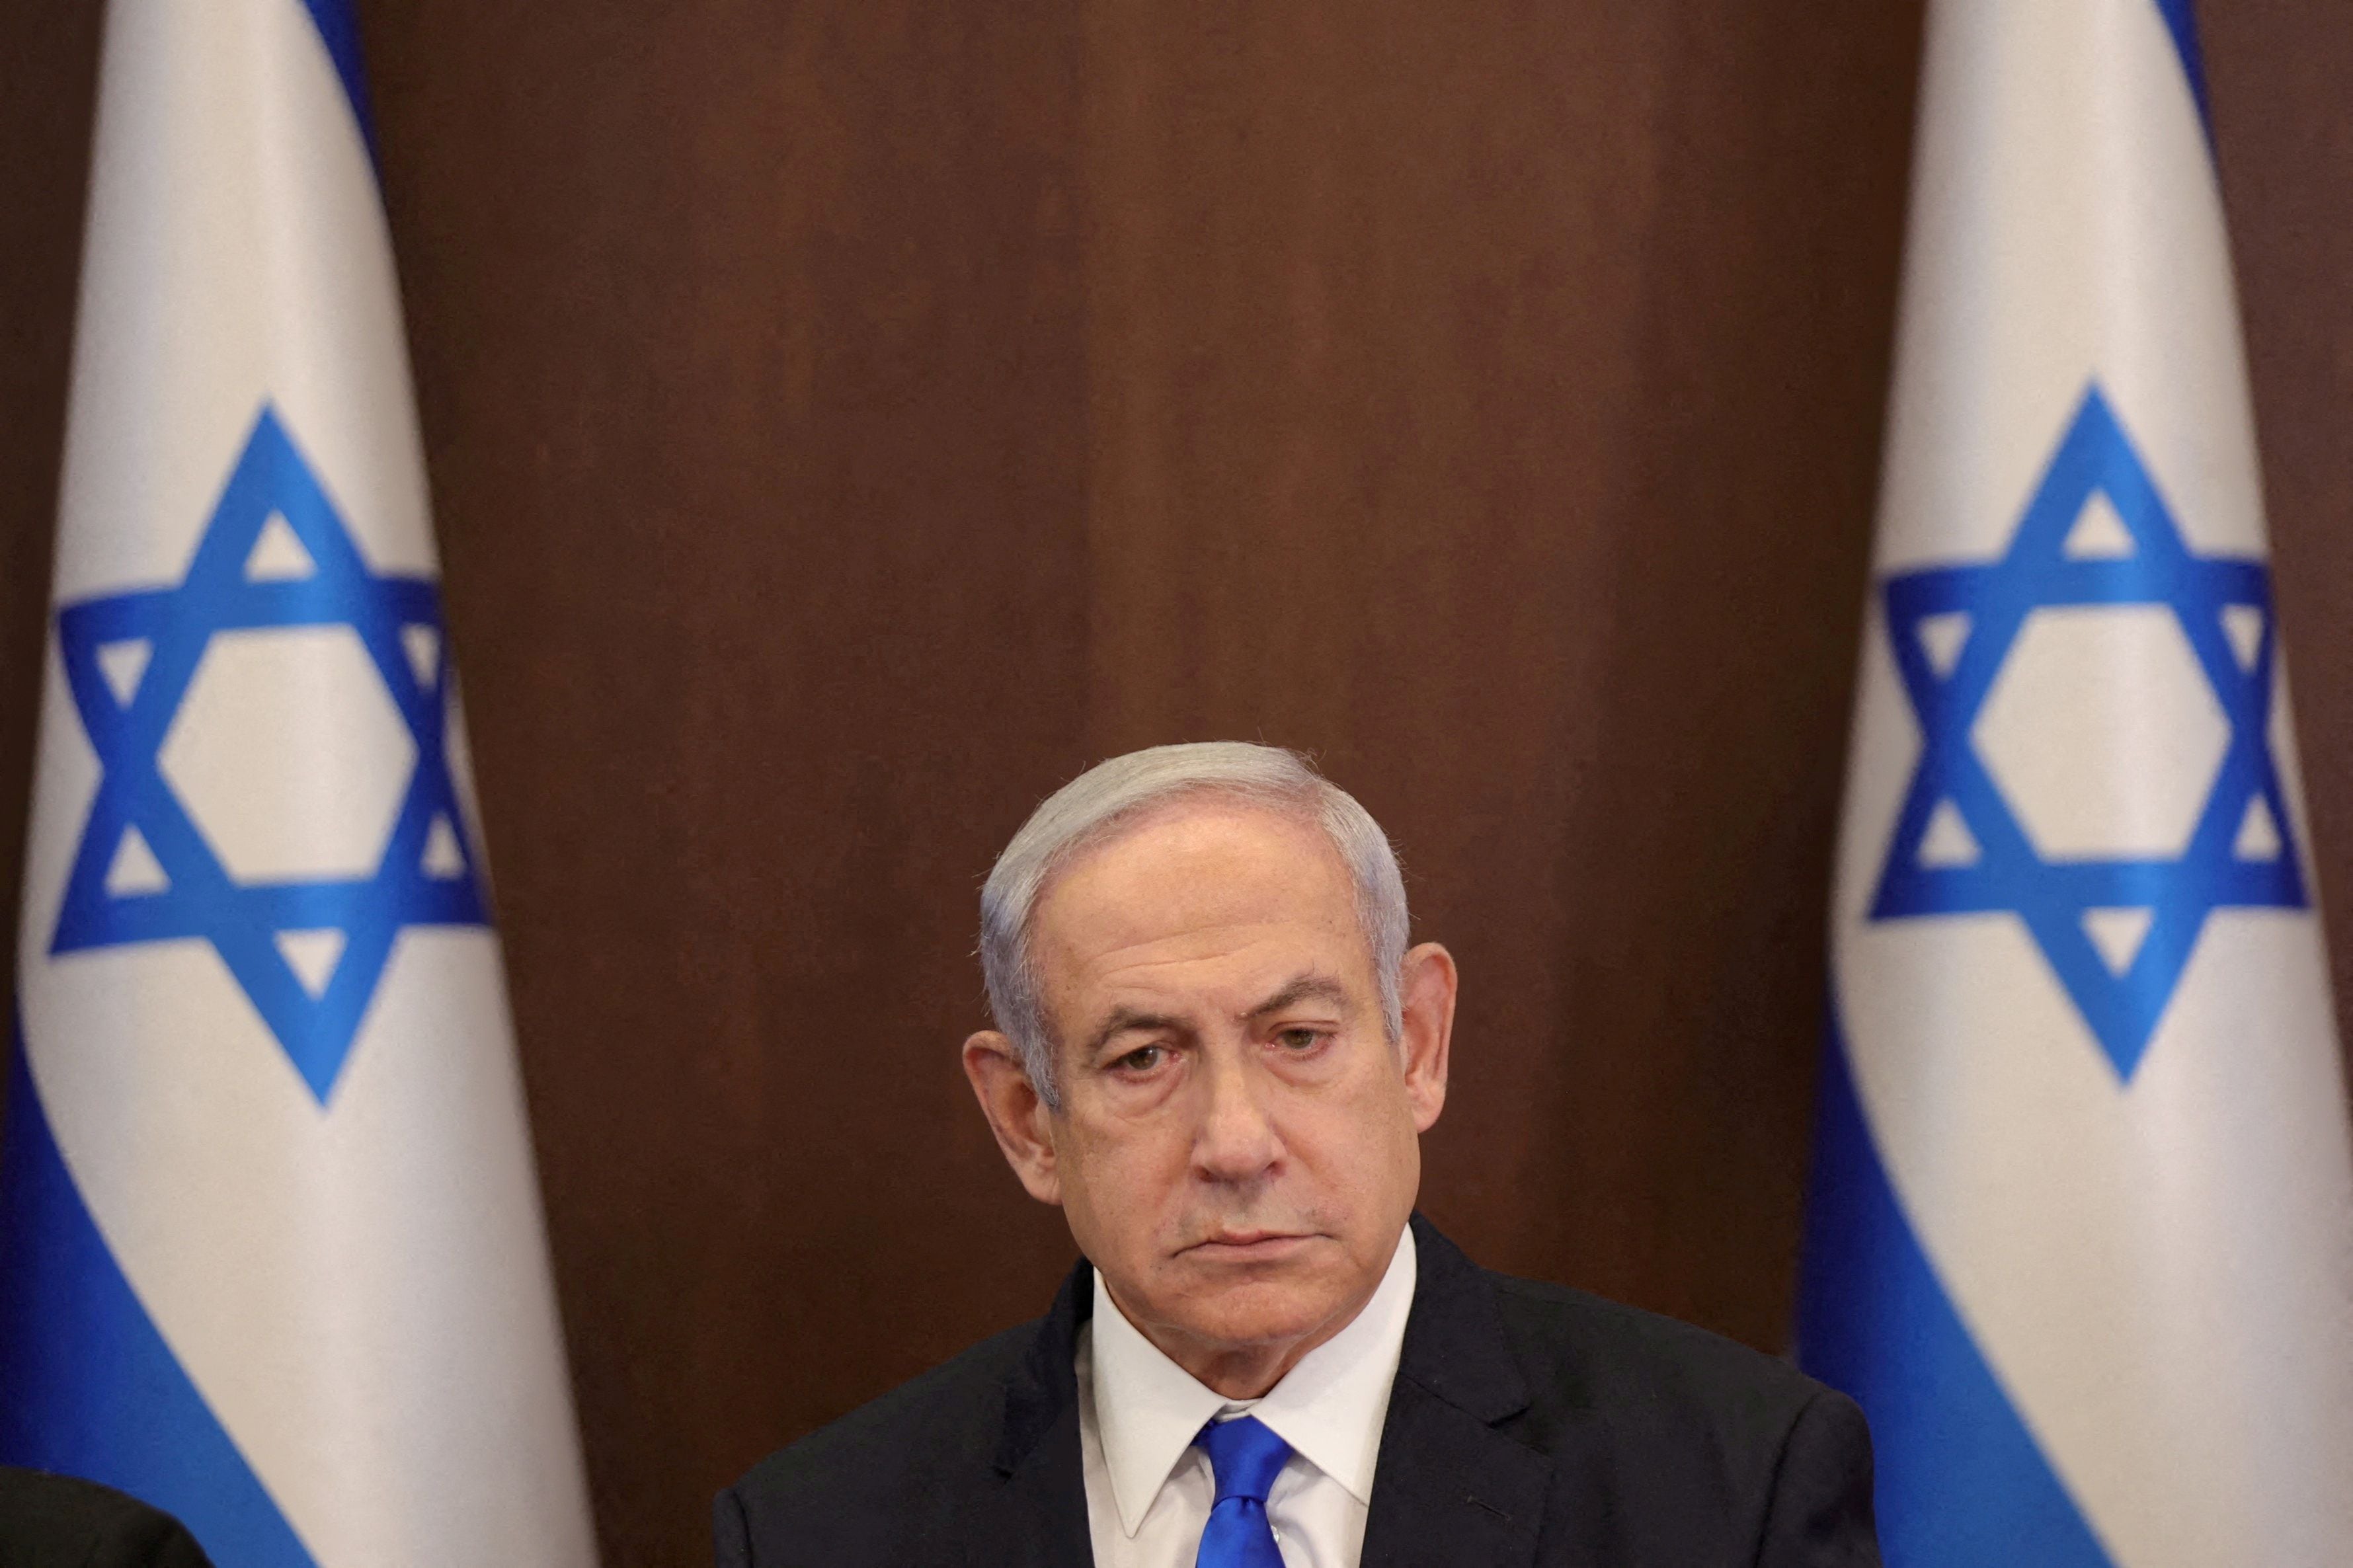 El primer ministro israelí, Benjamin Netanyahu, tenía previsto viajar a China previo a los ataques terroristas de Hamas (ABIR SULTAN/ REUTERS)